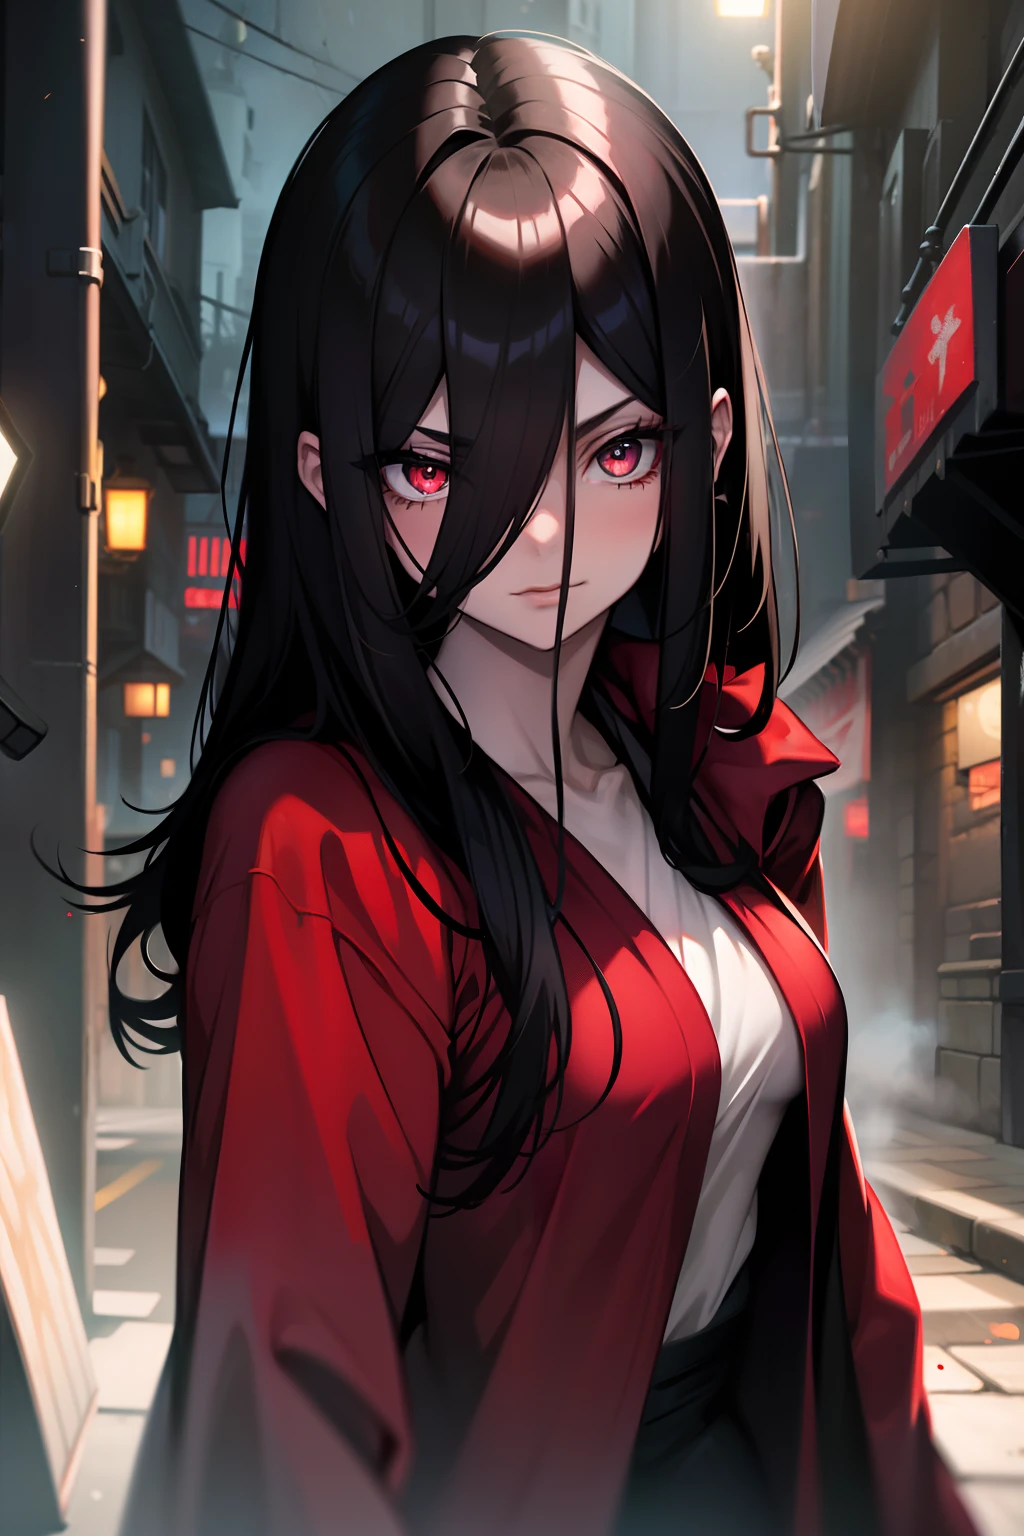 (( best quality, Masterpice, )) Crimson Eyes, shining eyes, natta, red robe, standing, feminine, Long hair, black hair, white skin